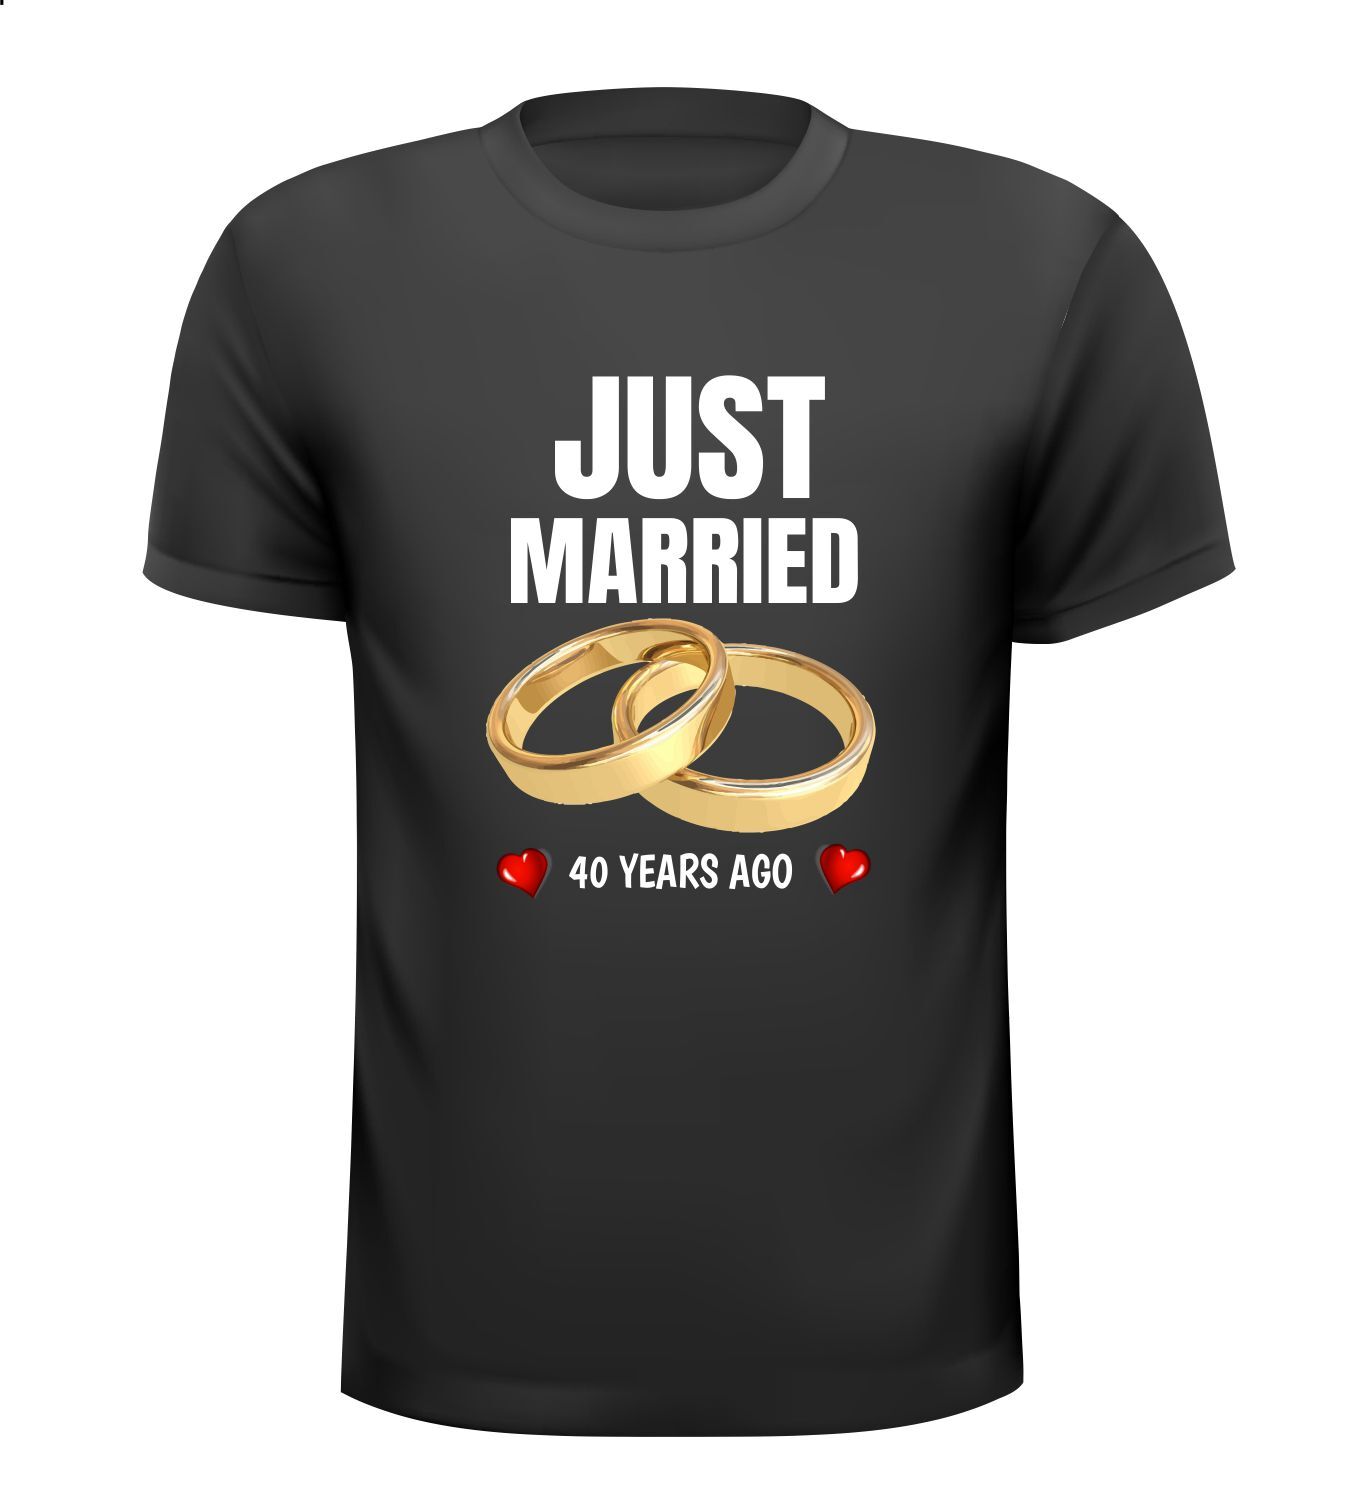 T-shirt Just Married 40 years ago pas getrouwd 40 jaar geleden jaar geleden!